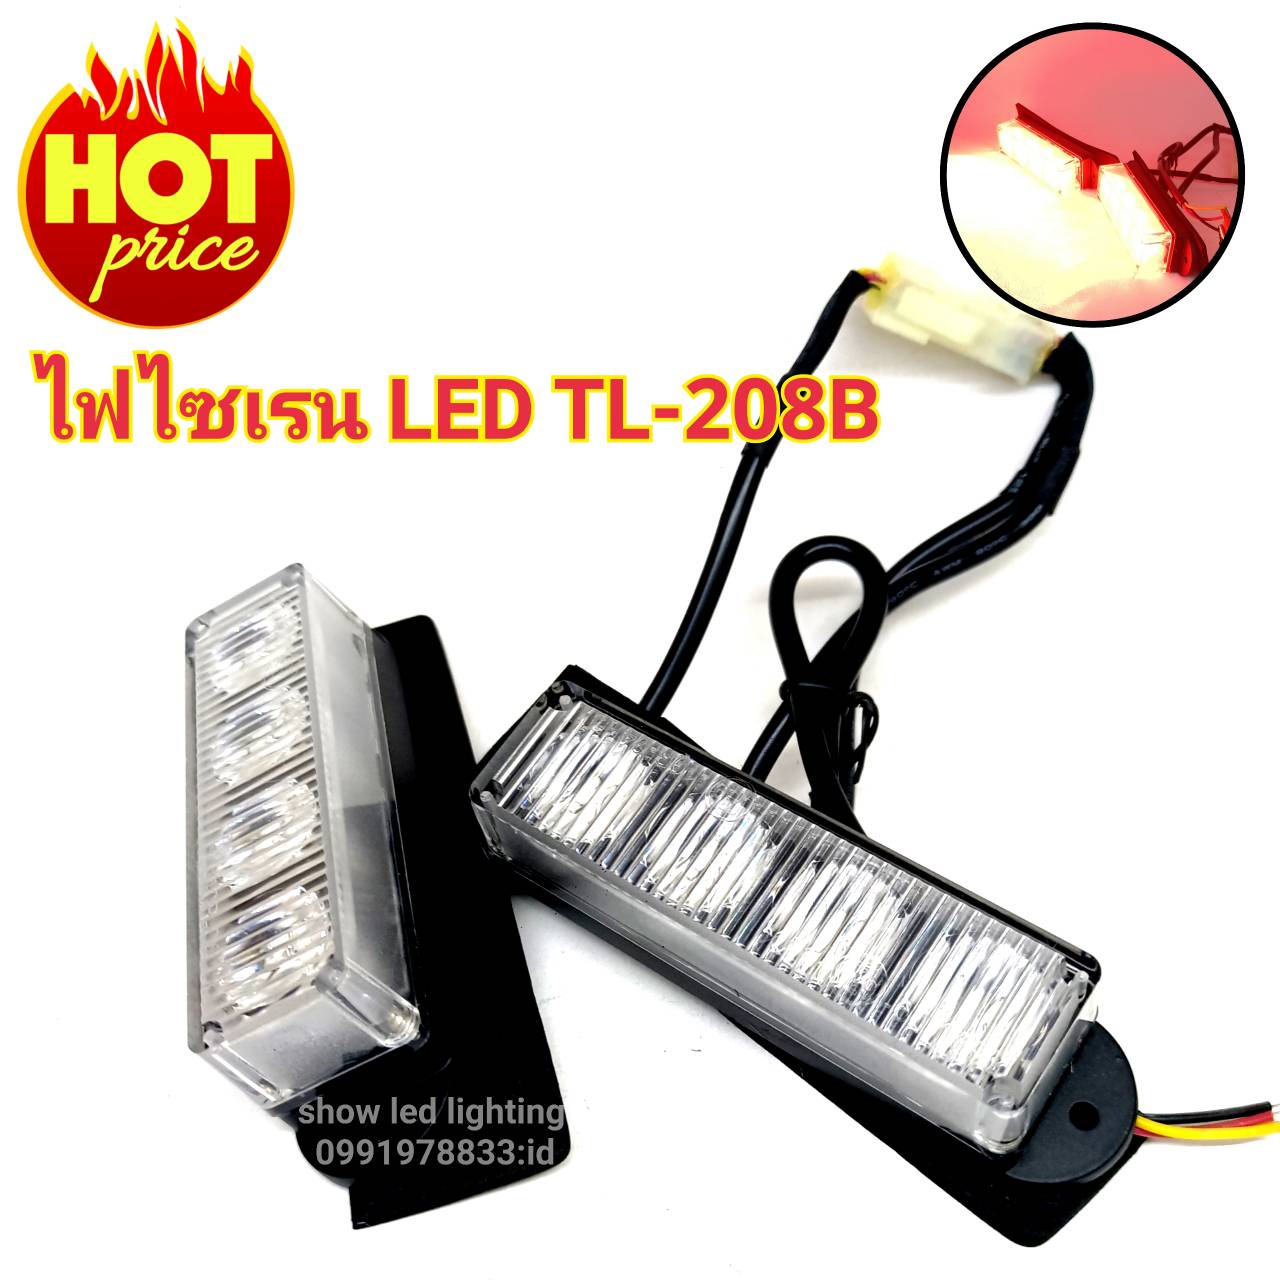 ไฟไซเรน LED TL-208B  หลอด 3W 4LED ไฟไซเรนแบบเเปะ 12v ไฟฉุกเฉิน กู้ภัย กู้ชีพ แสงแรงสว่างตาแตก